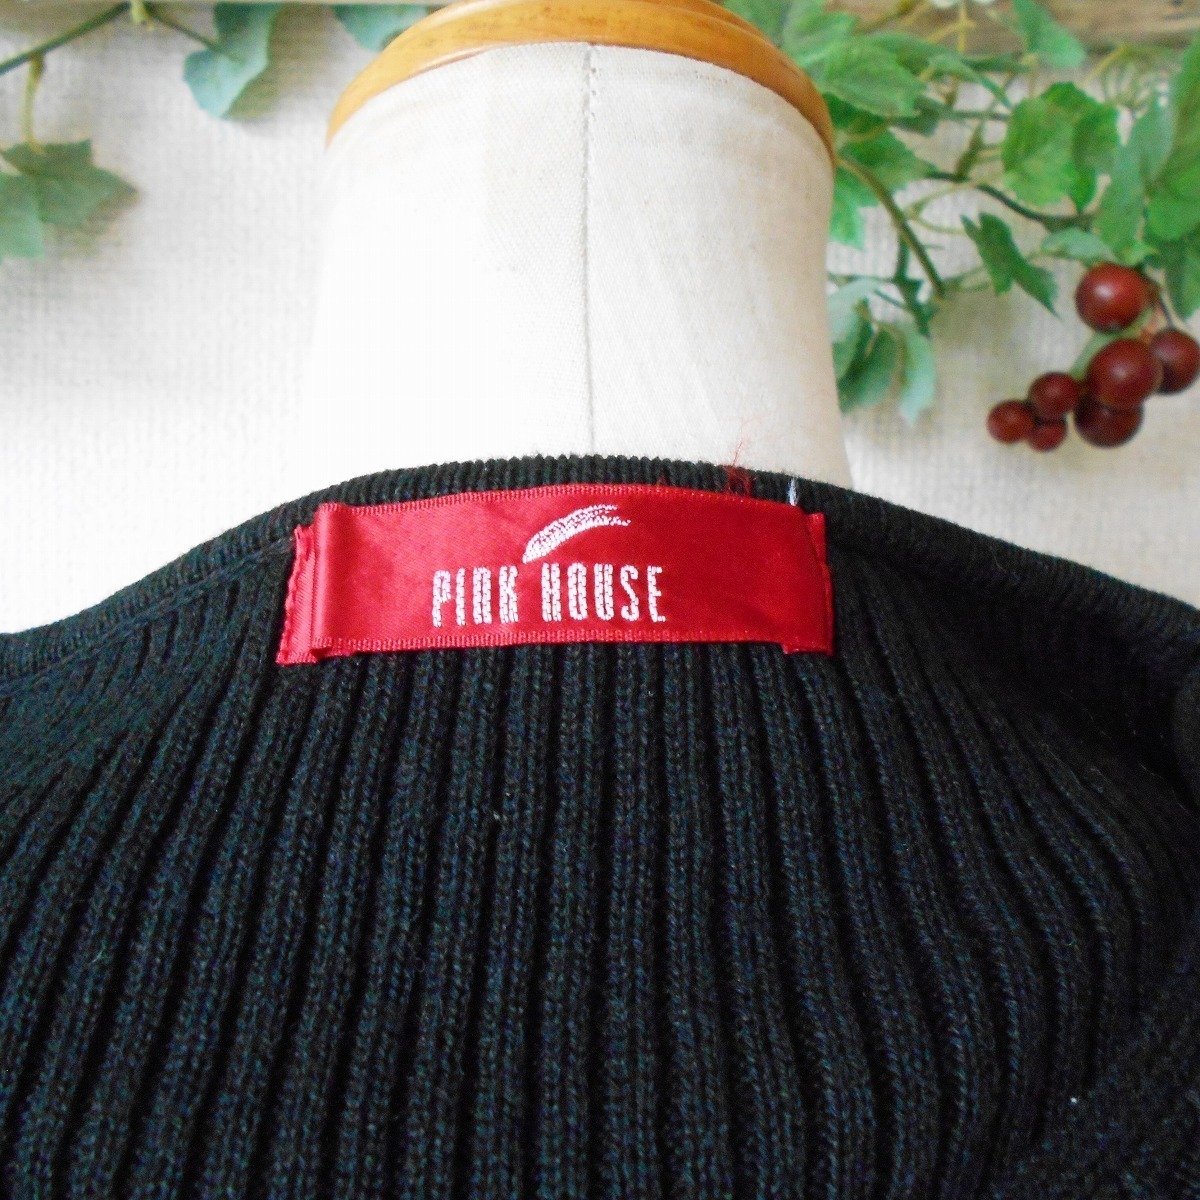  Pink House PINKHOSE осень-зима весна 8 минут рукав ребра вязаный V шея свитер чёрный 